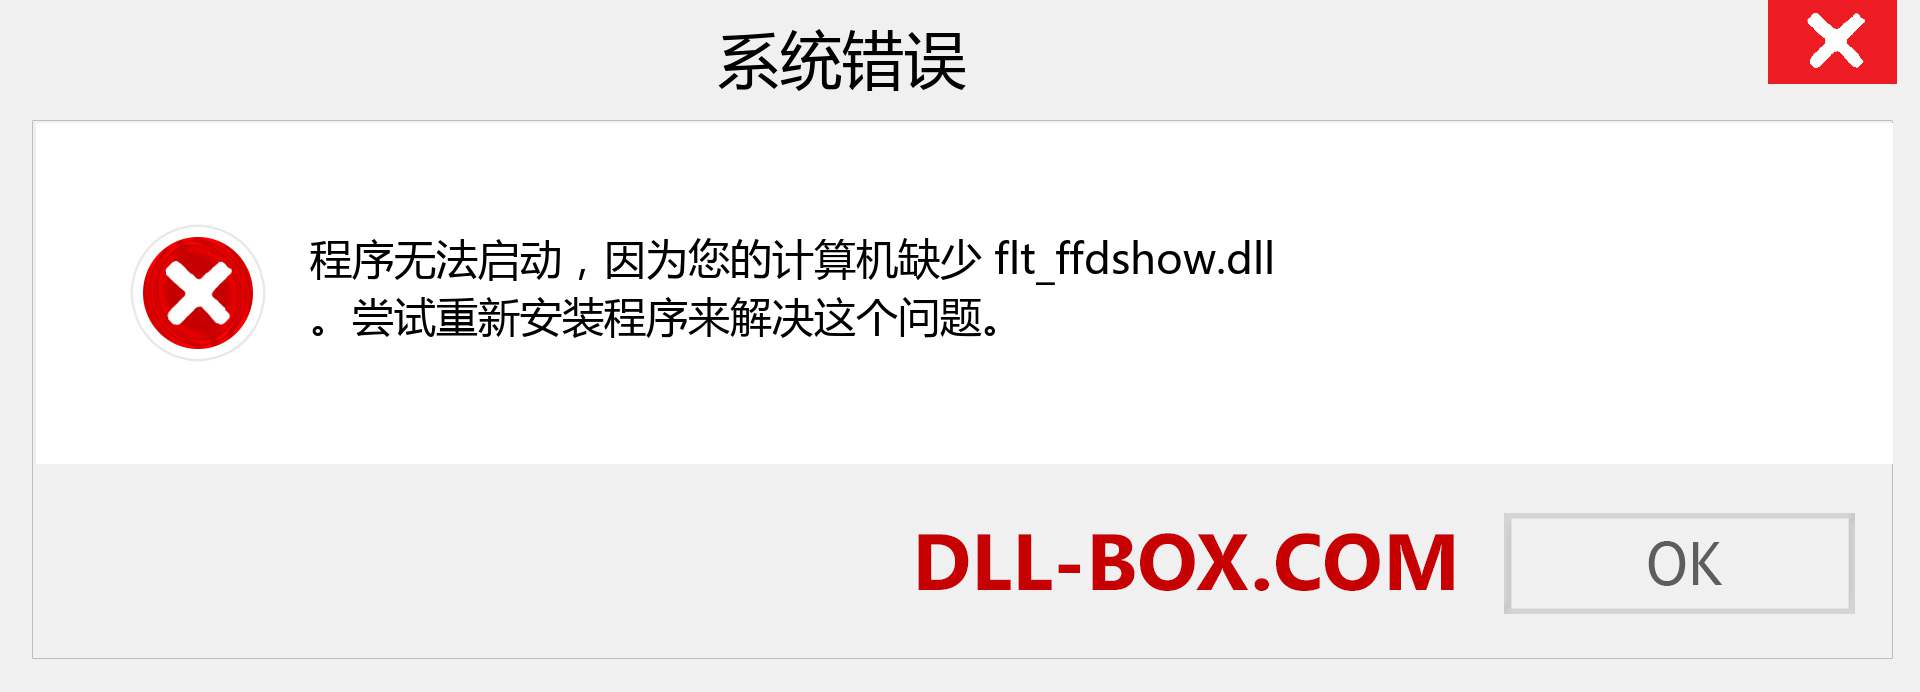 flt_ffdshow.dll 文件丢失？。 适用于 Windows 7、8、10 的下载 - 修复 Windows、照片、图像上的 flt_ffdshow dll 丢失错误